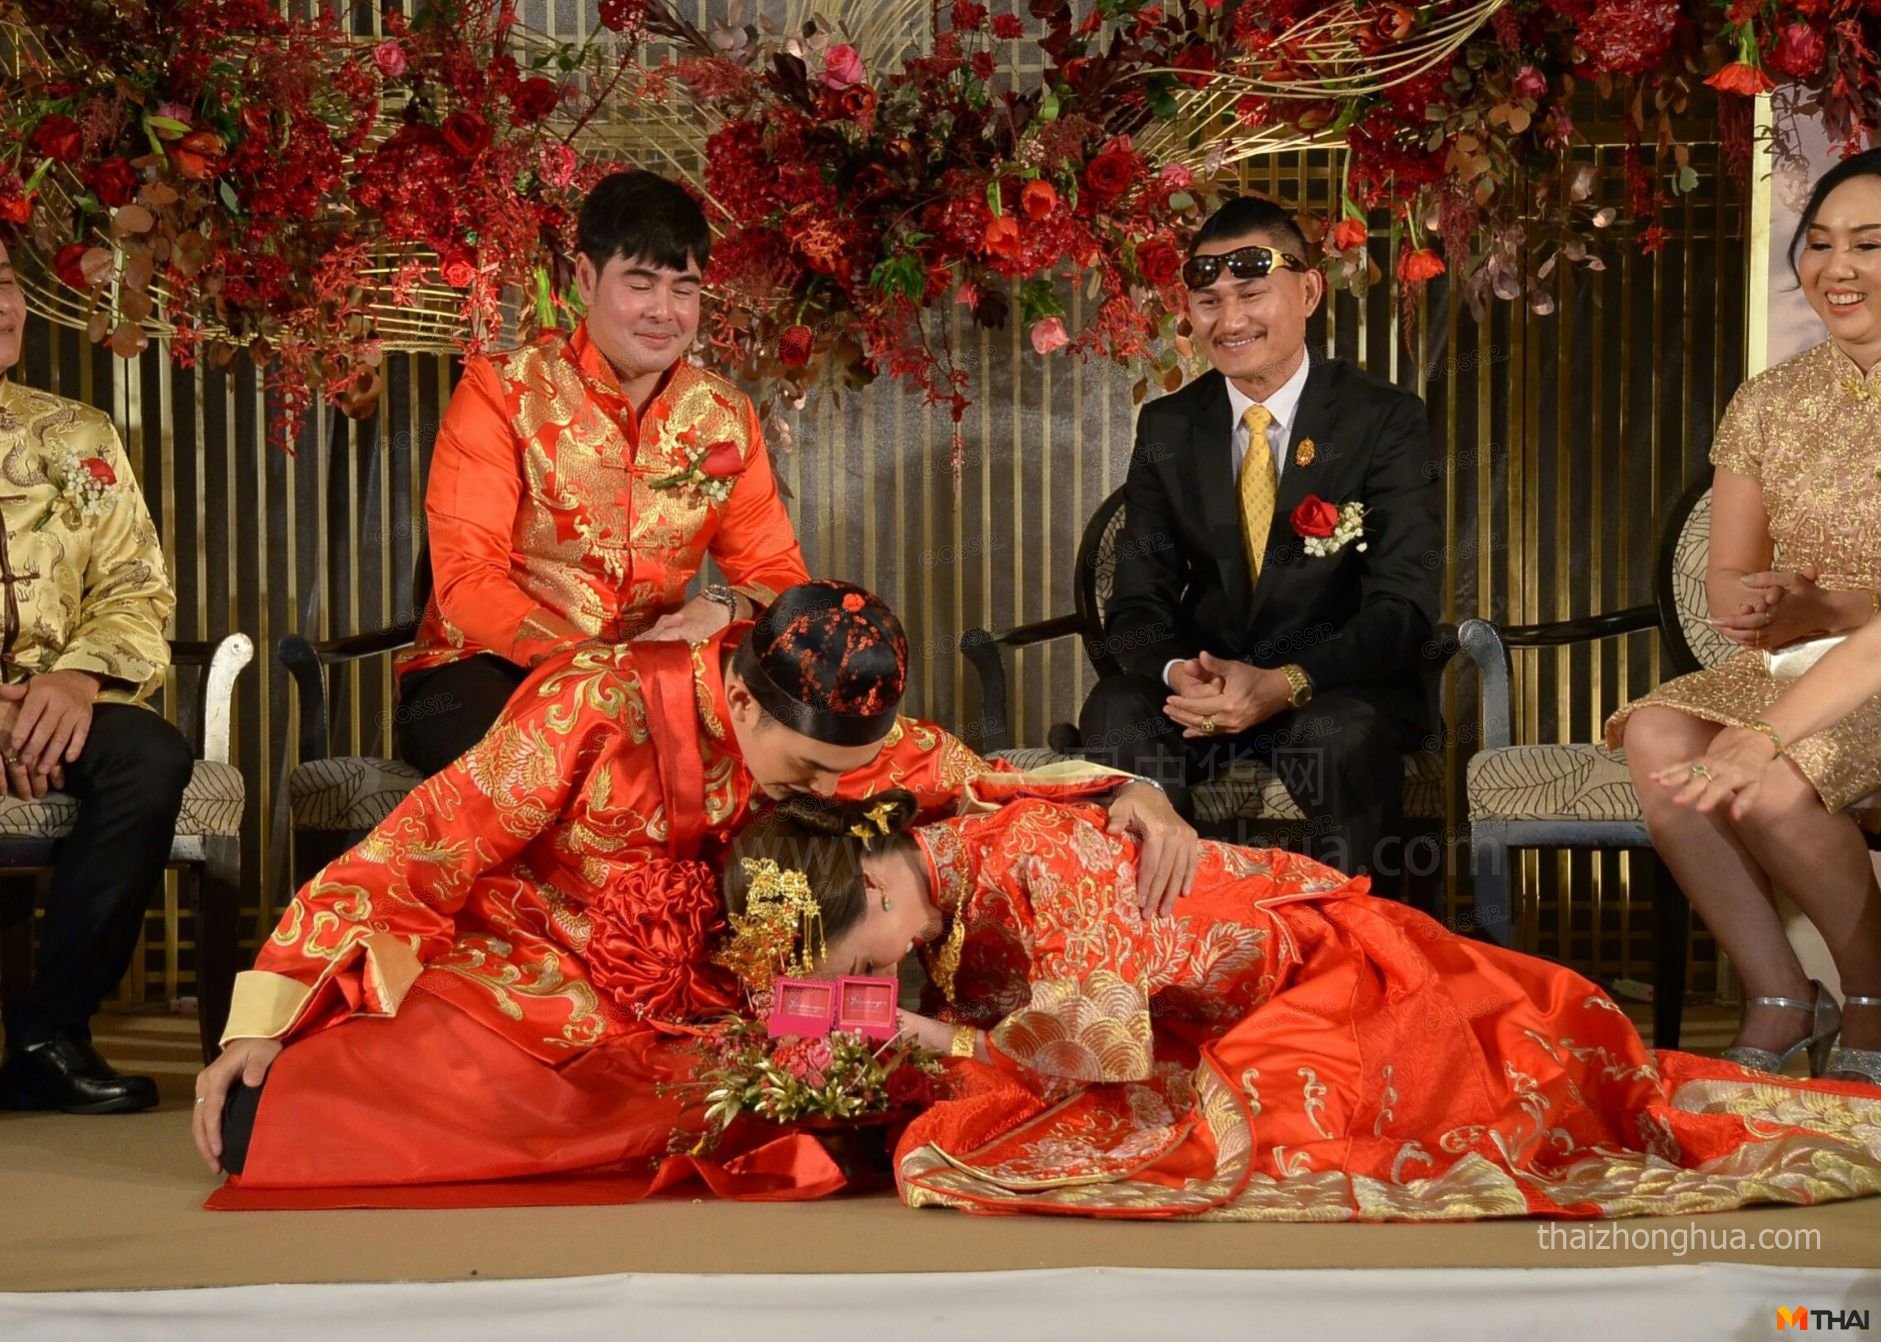 泰国明星 Techin 结婚 泰国中式婚礼